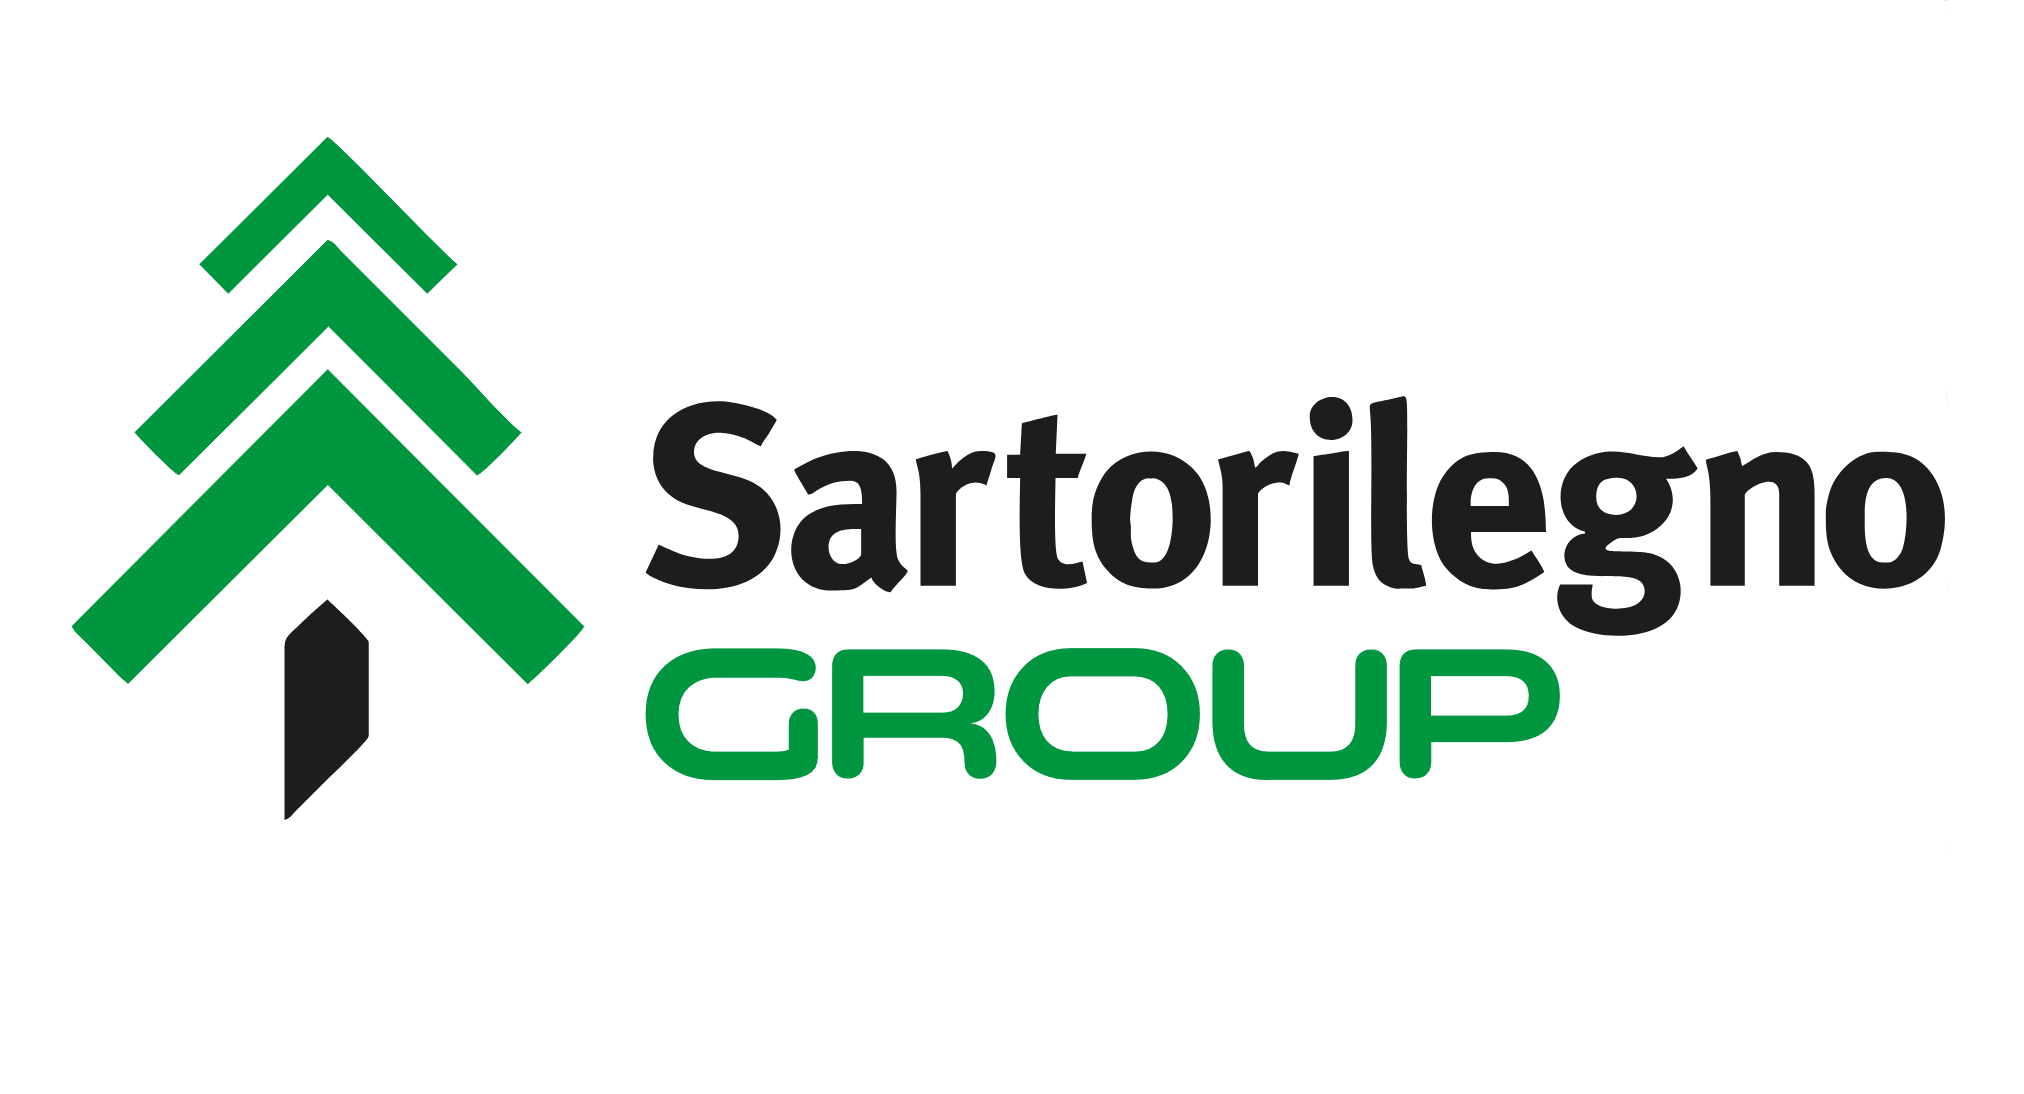 Sartori group